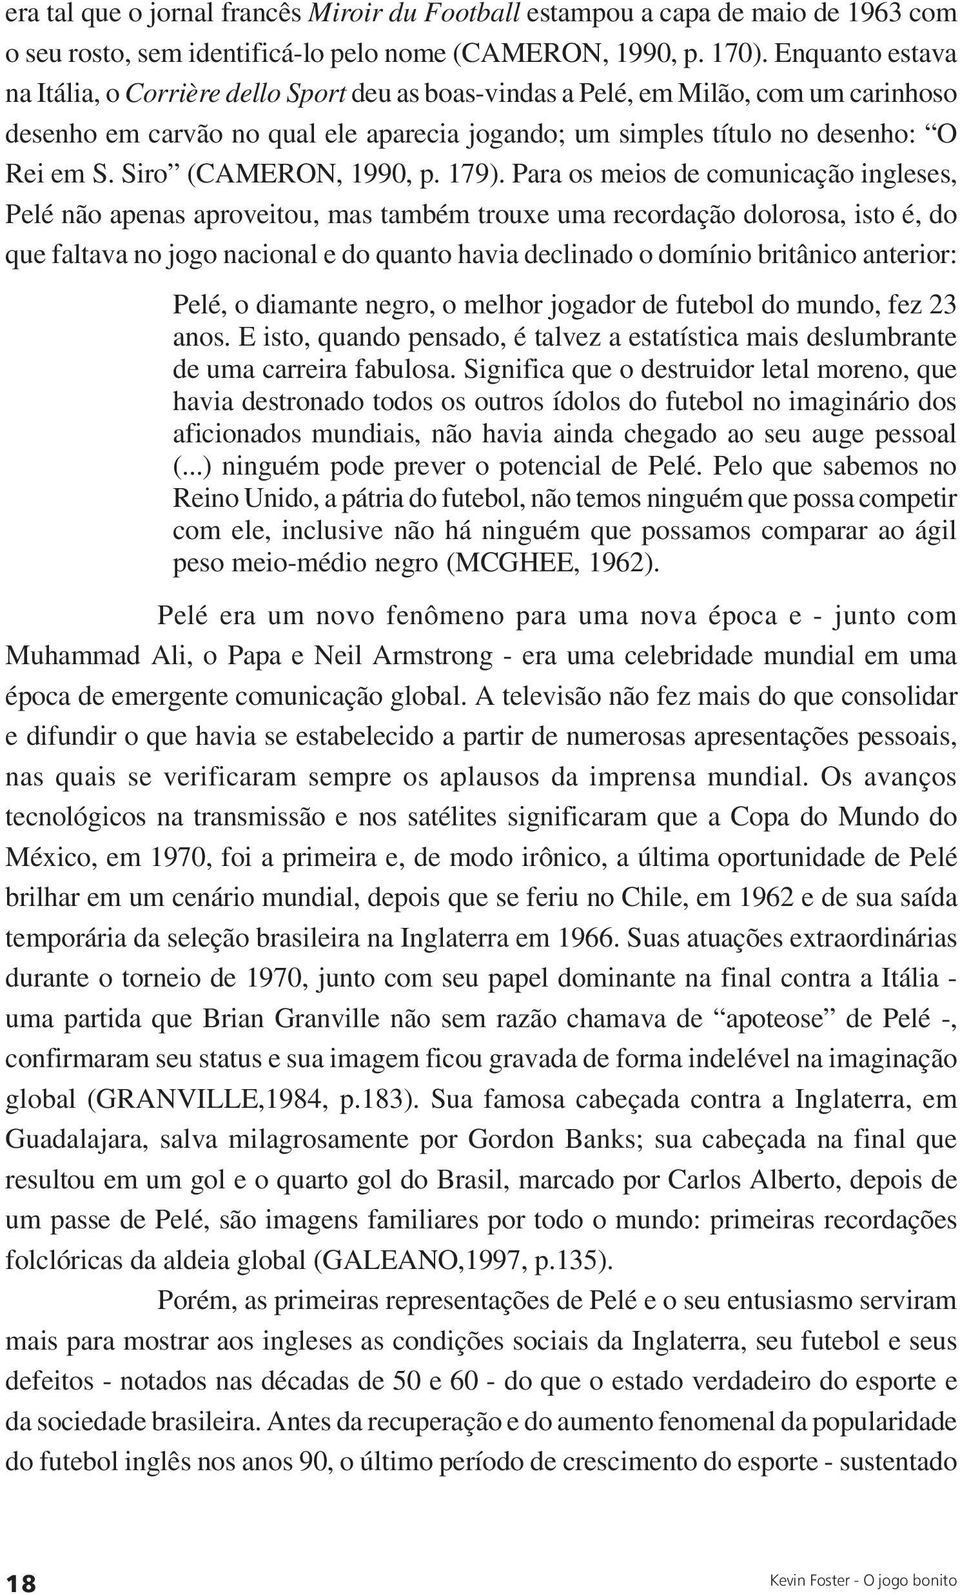 Siro (CAMERON, 1990, p. 179).